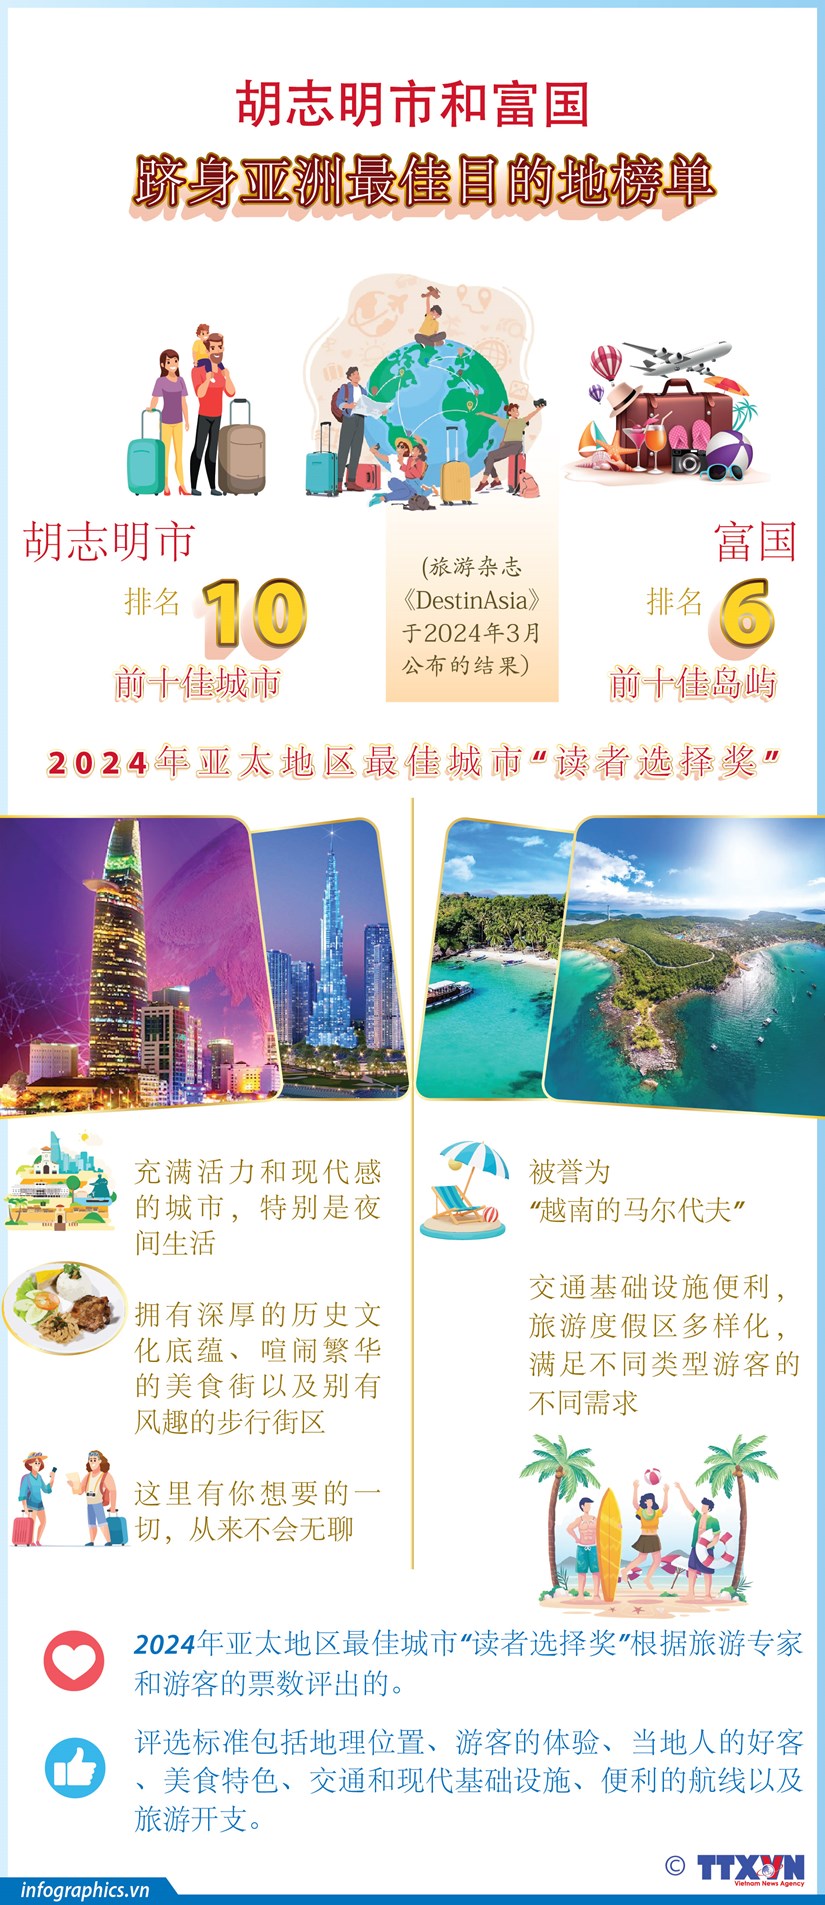 图表新闻：胡志明市和富国跻身亚洲最佳目的地榜单 hinh anh 1